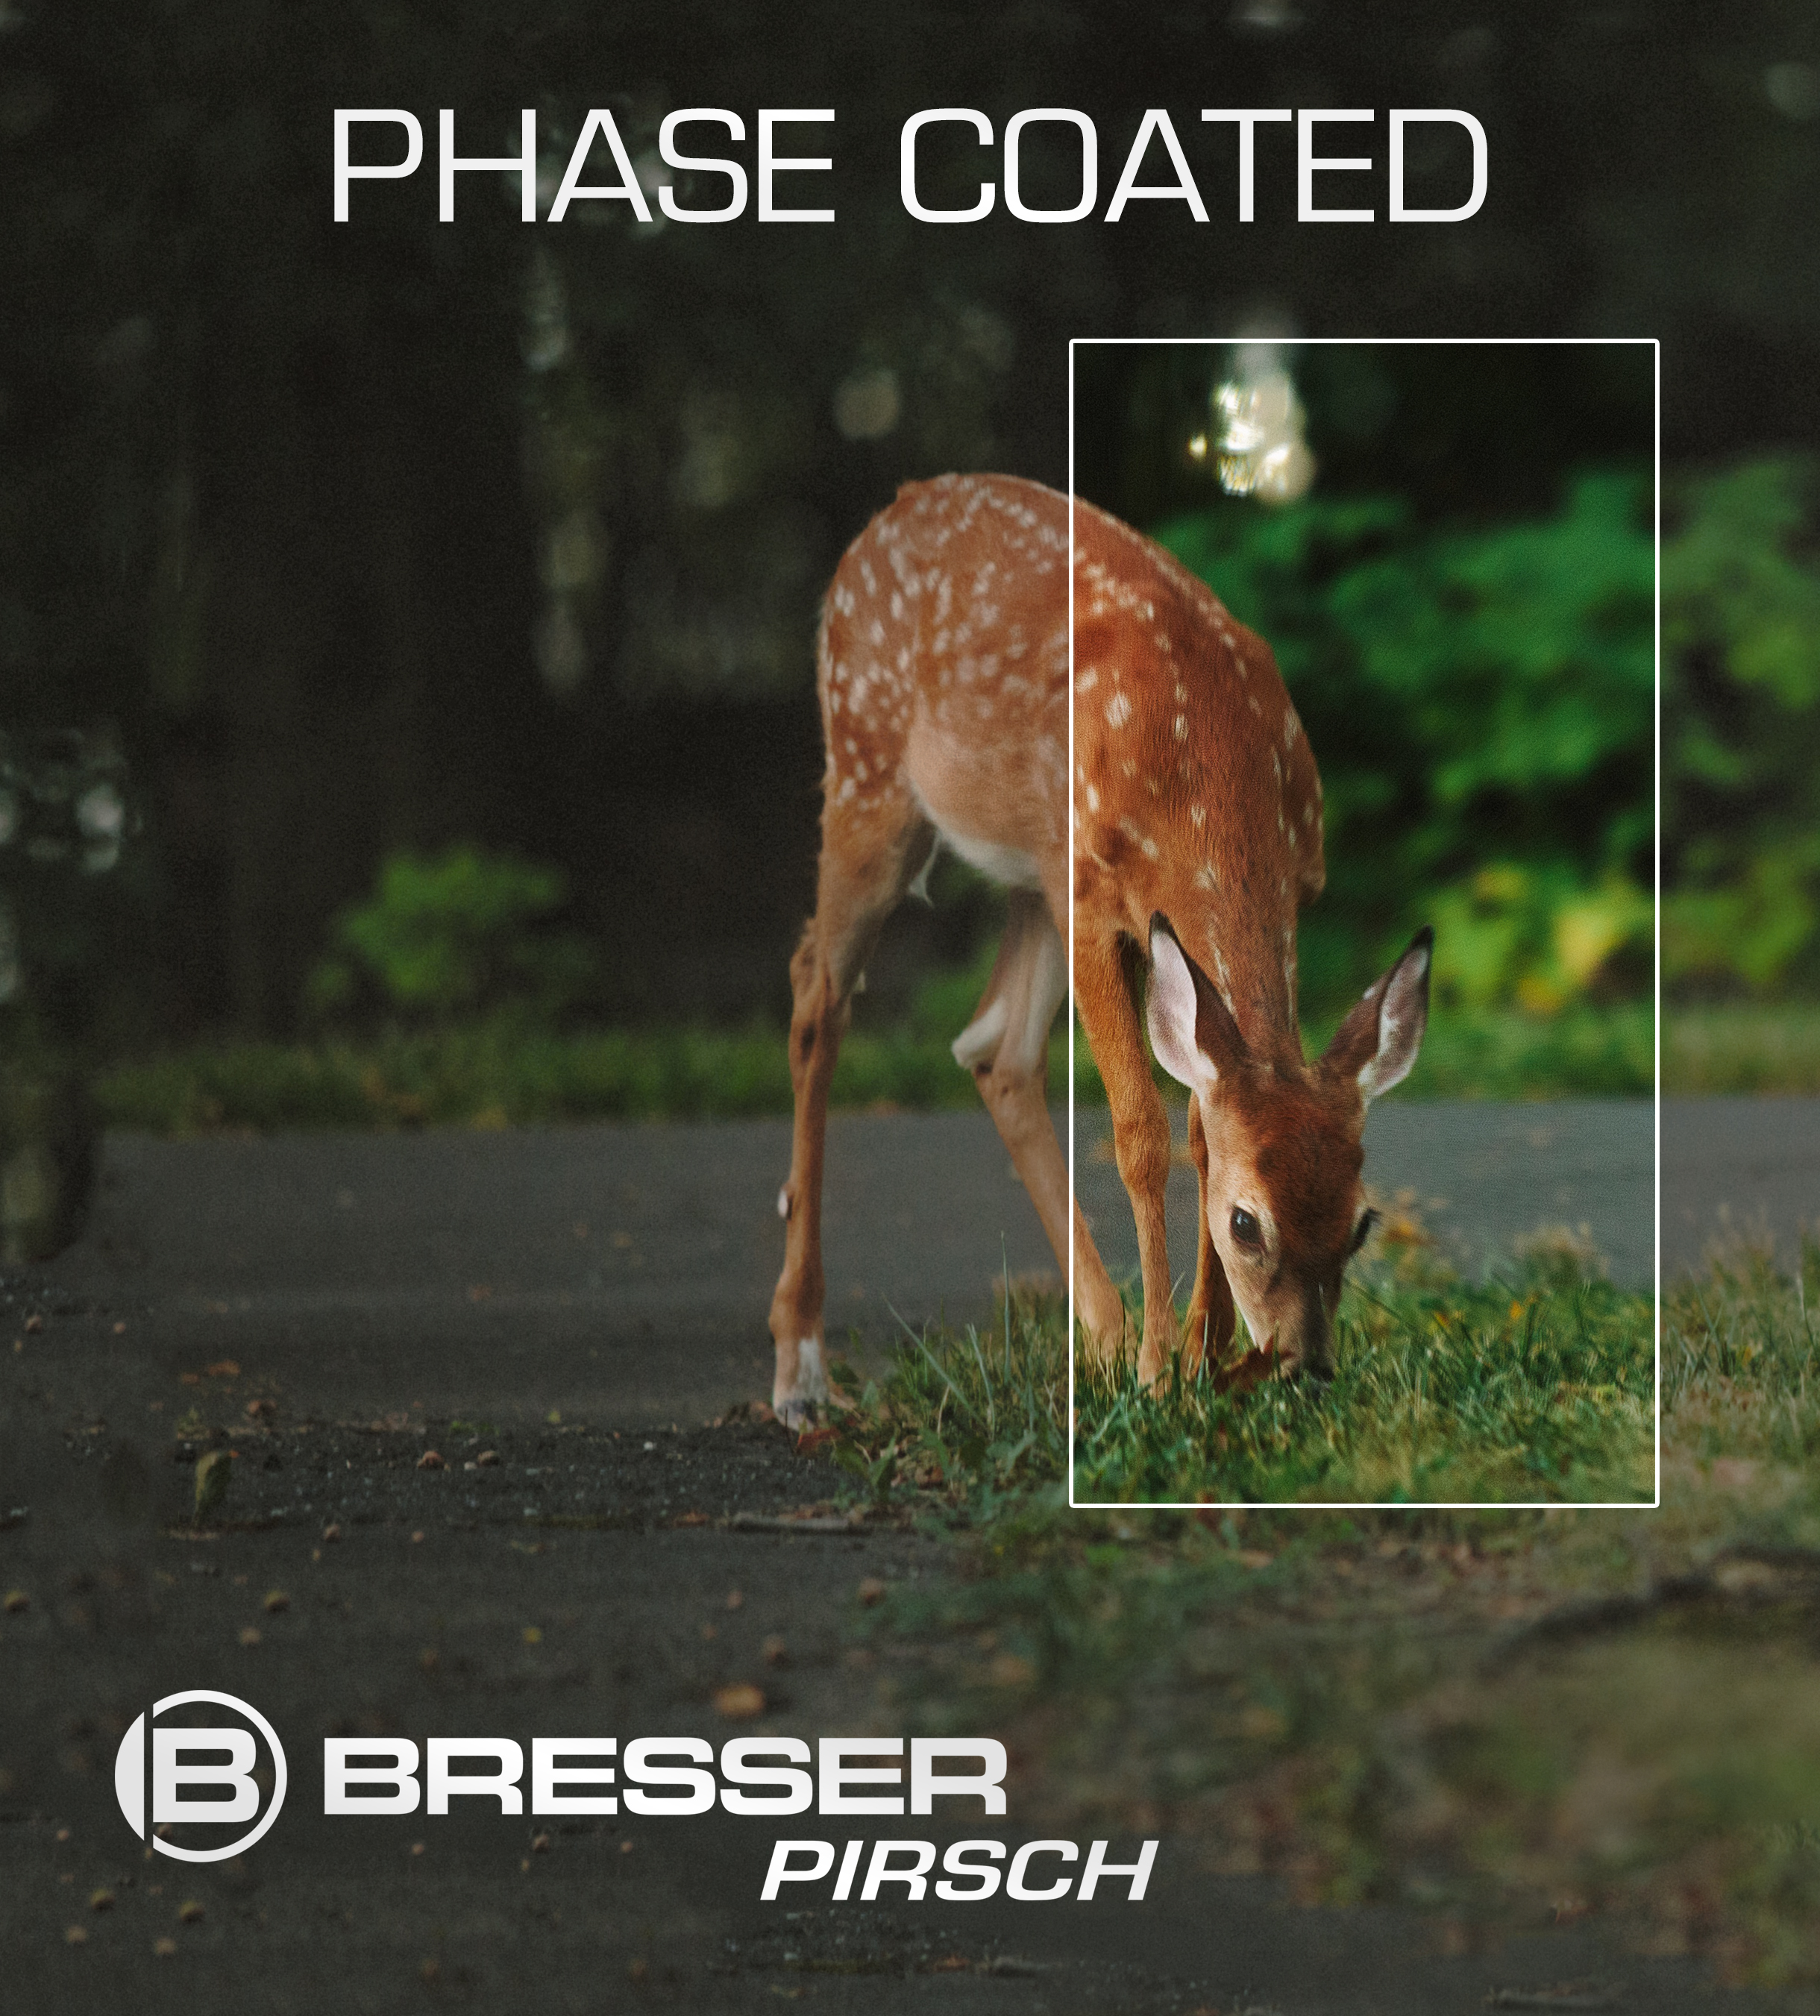 BRESSER Pirsch jumelles 8x26 Phase Coating